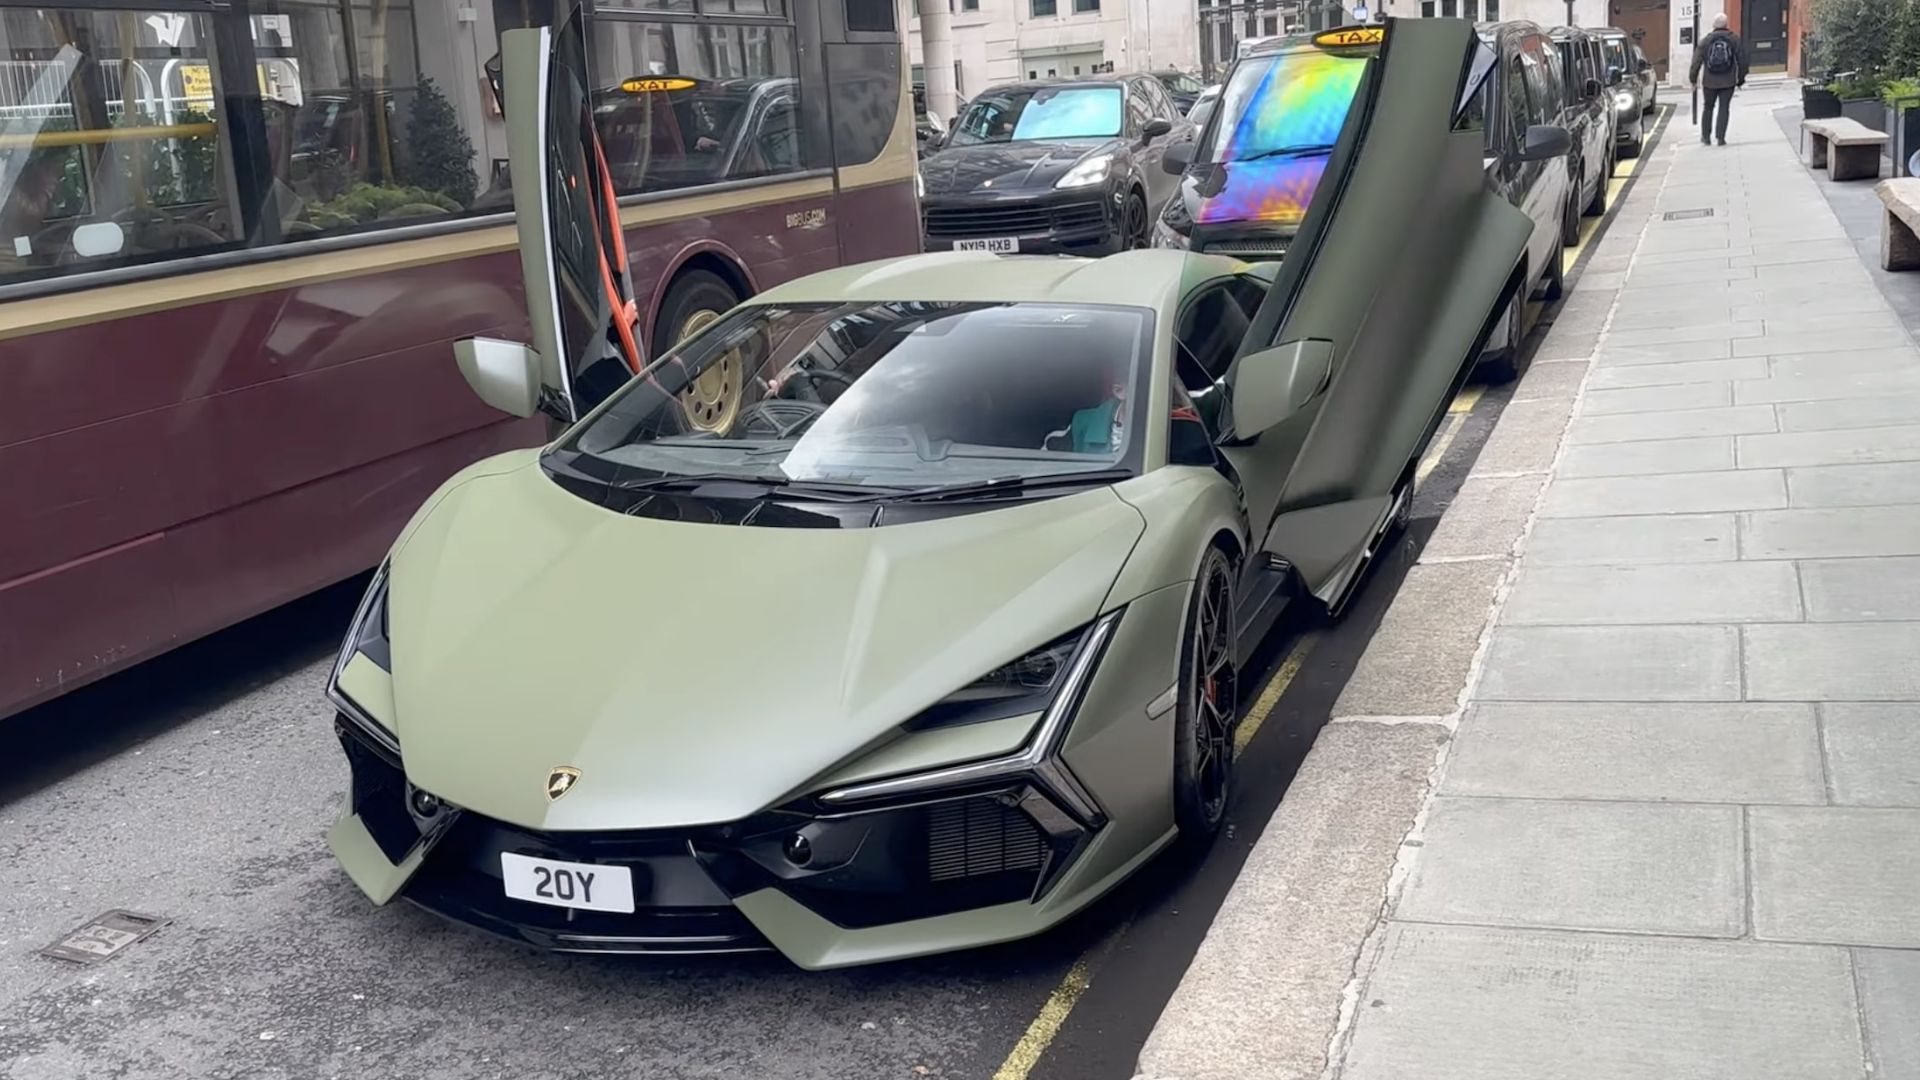 London Welcomes the Lamborghini Revuelto